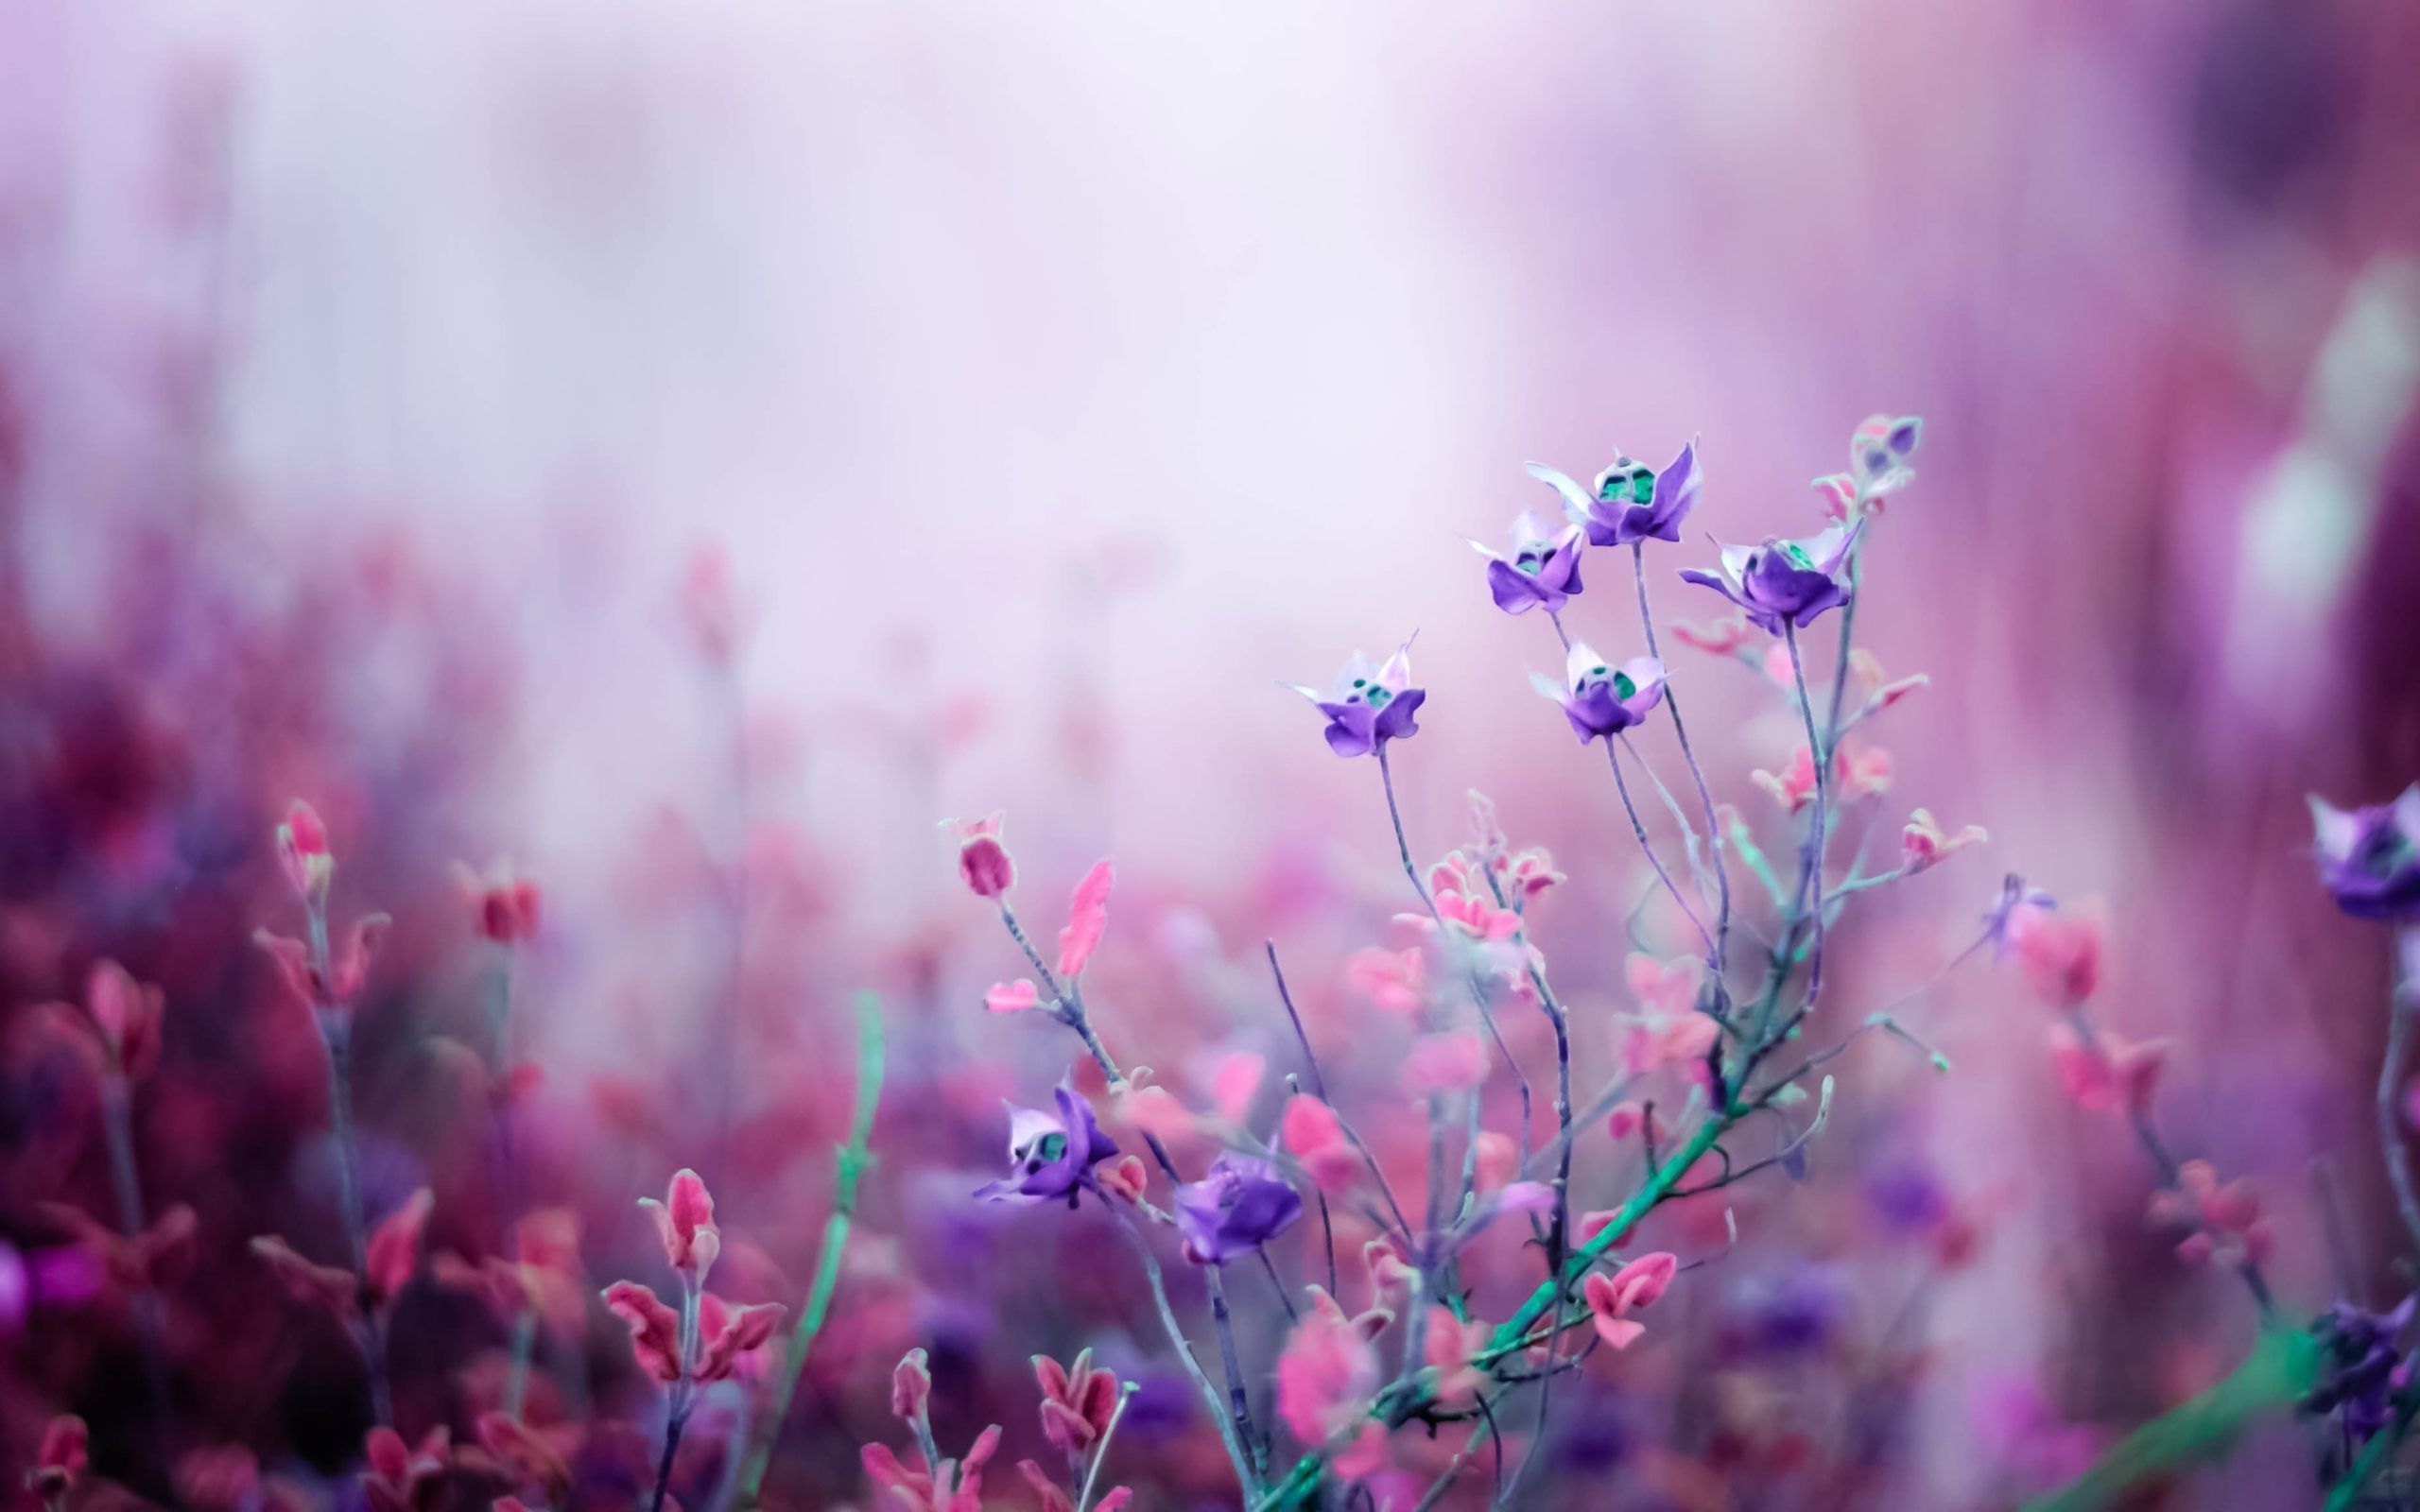 Elegant Light Purple Flower Background Wallpaper Image For Free Download   Pngtree